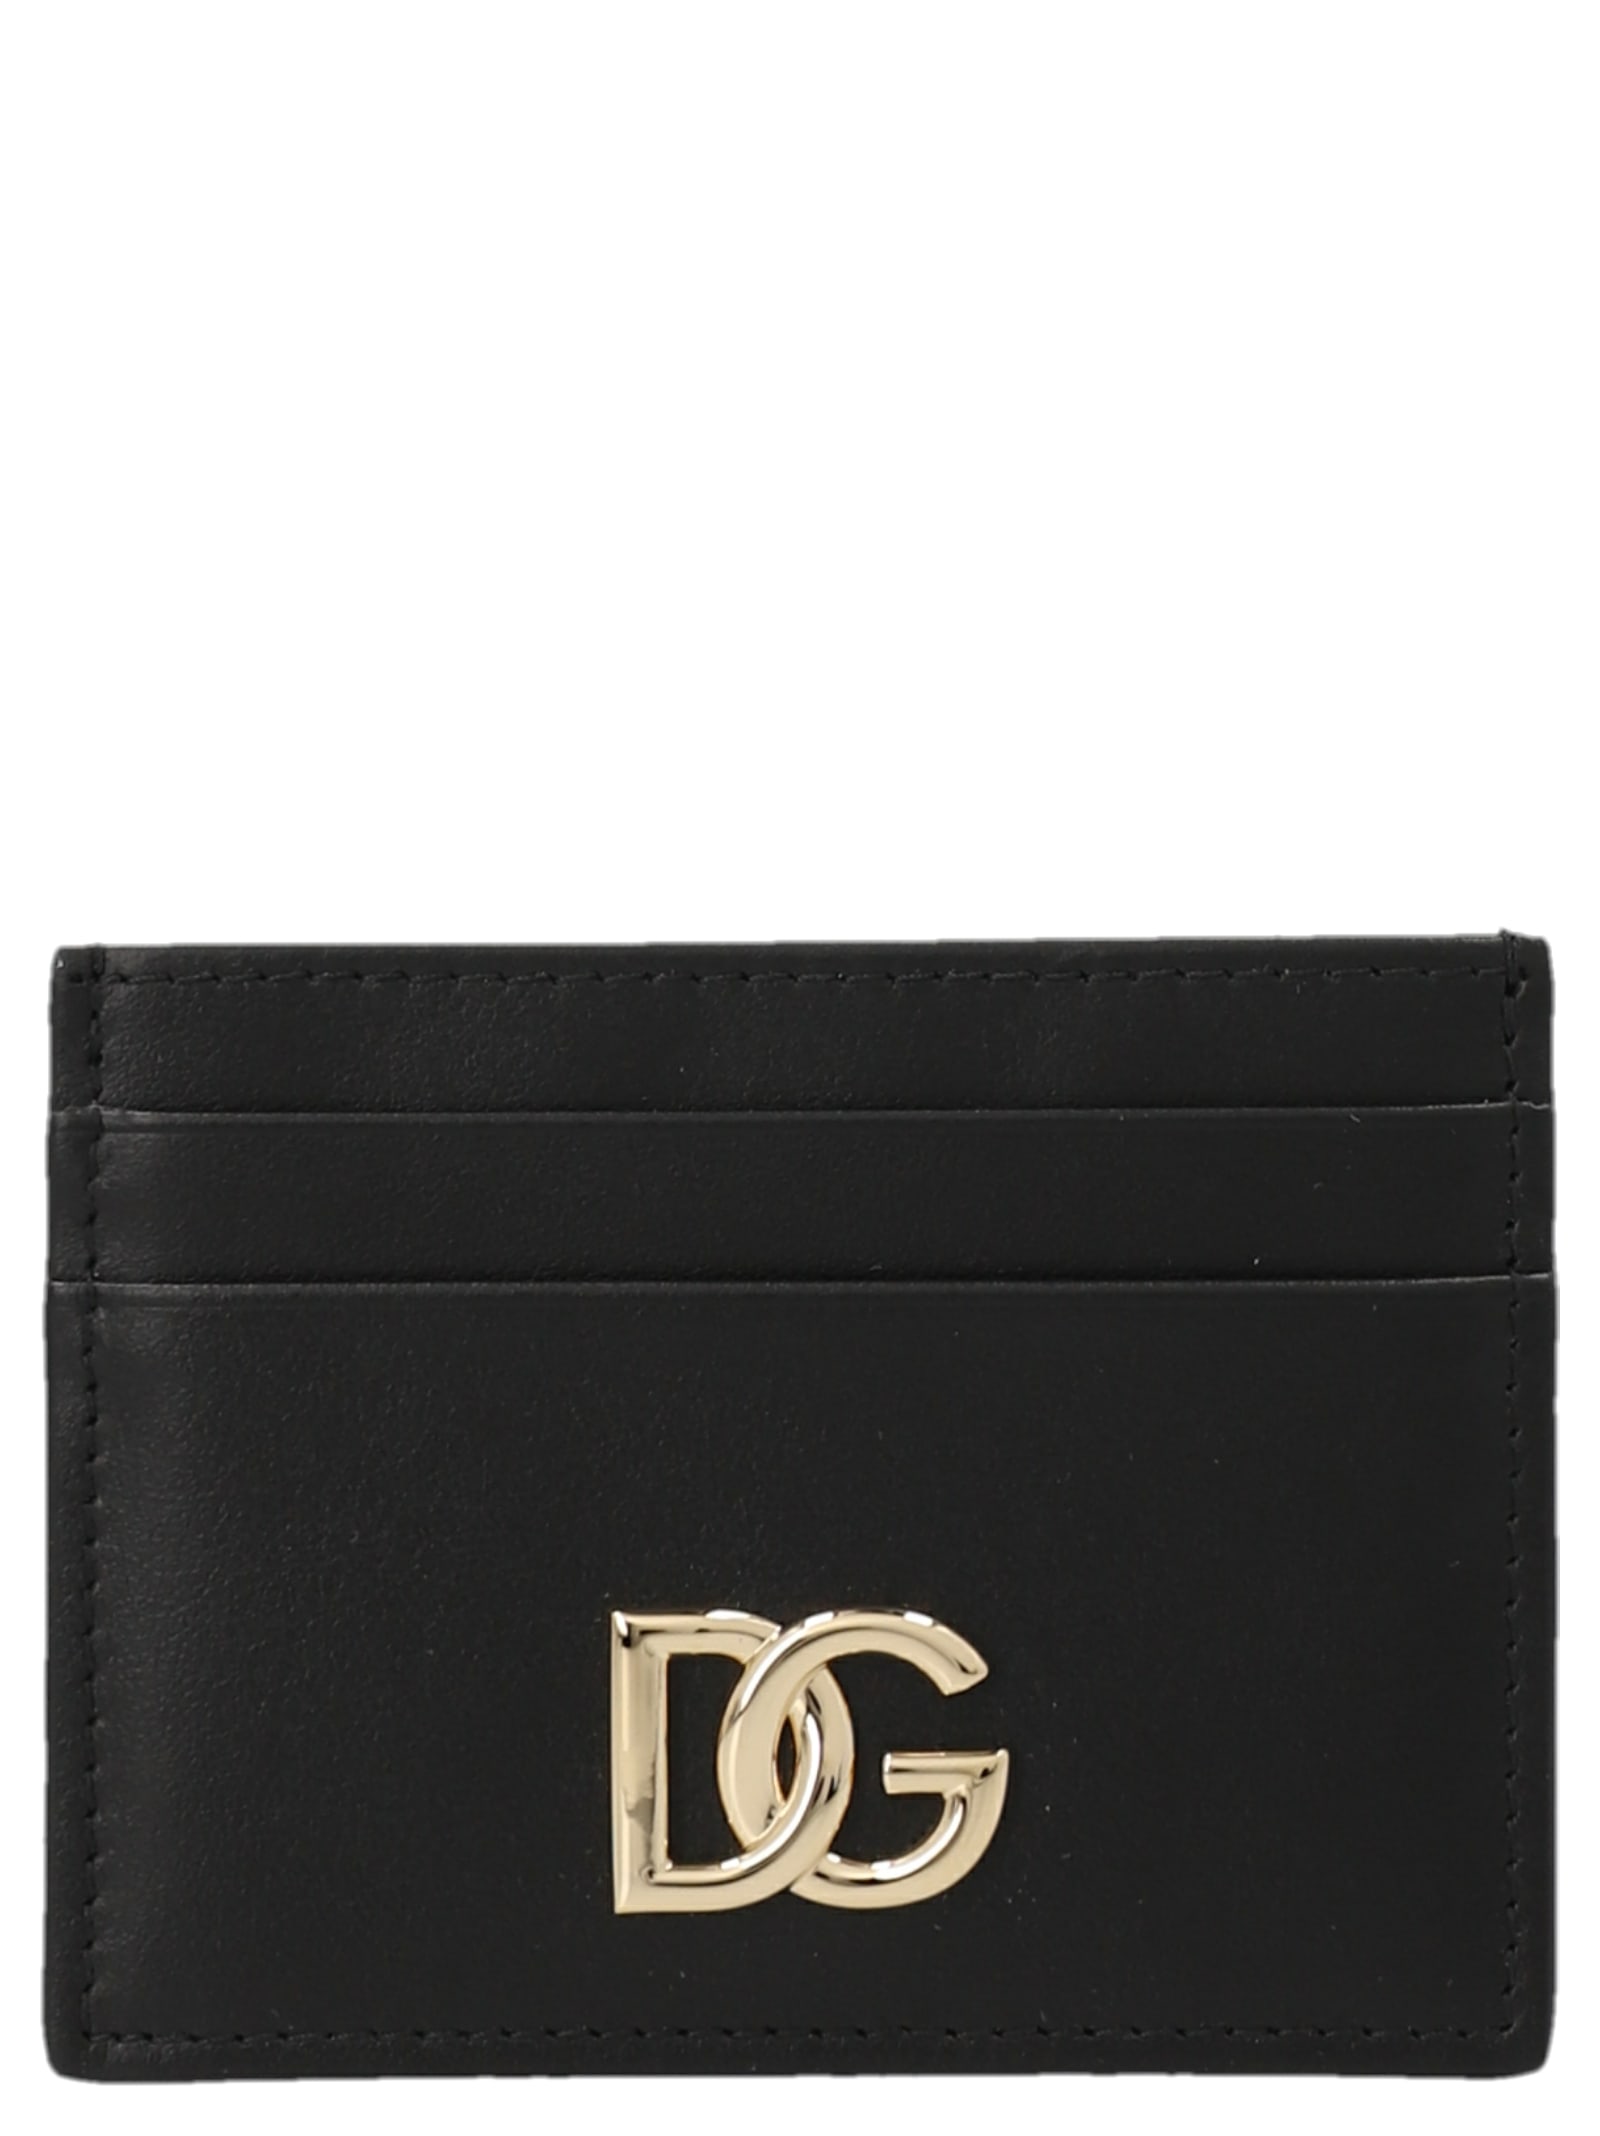 Dolce & Gabbana capri Card Holder